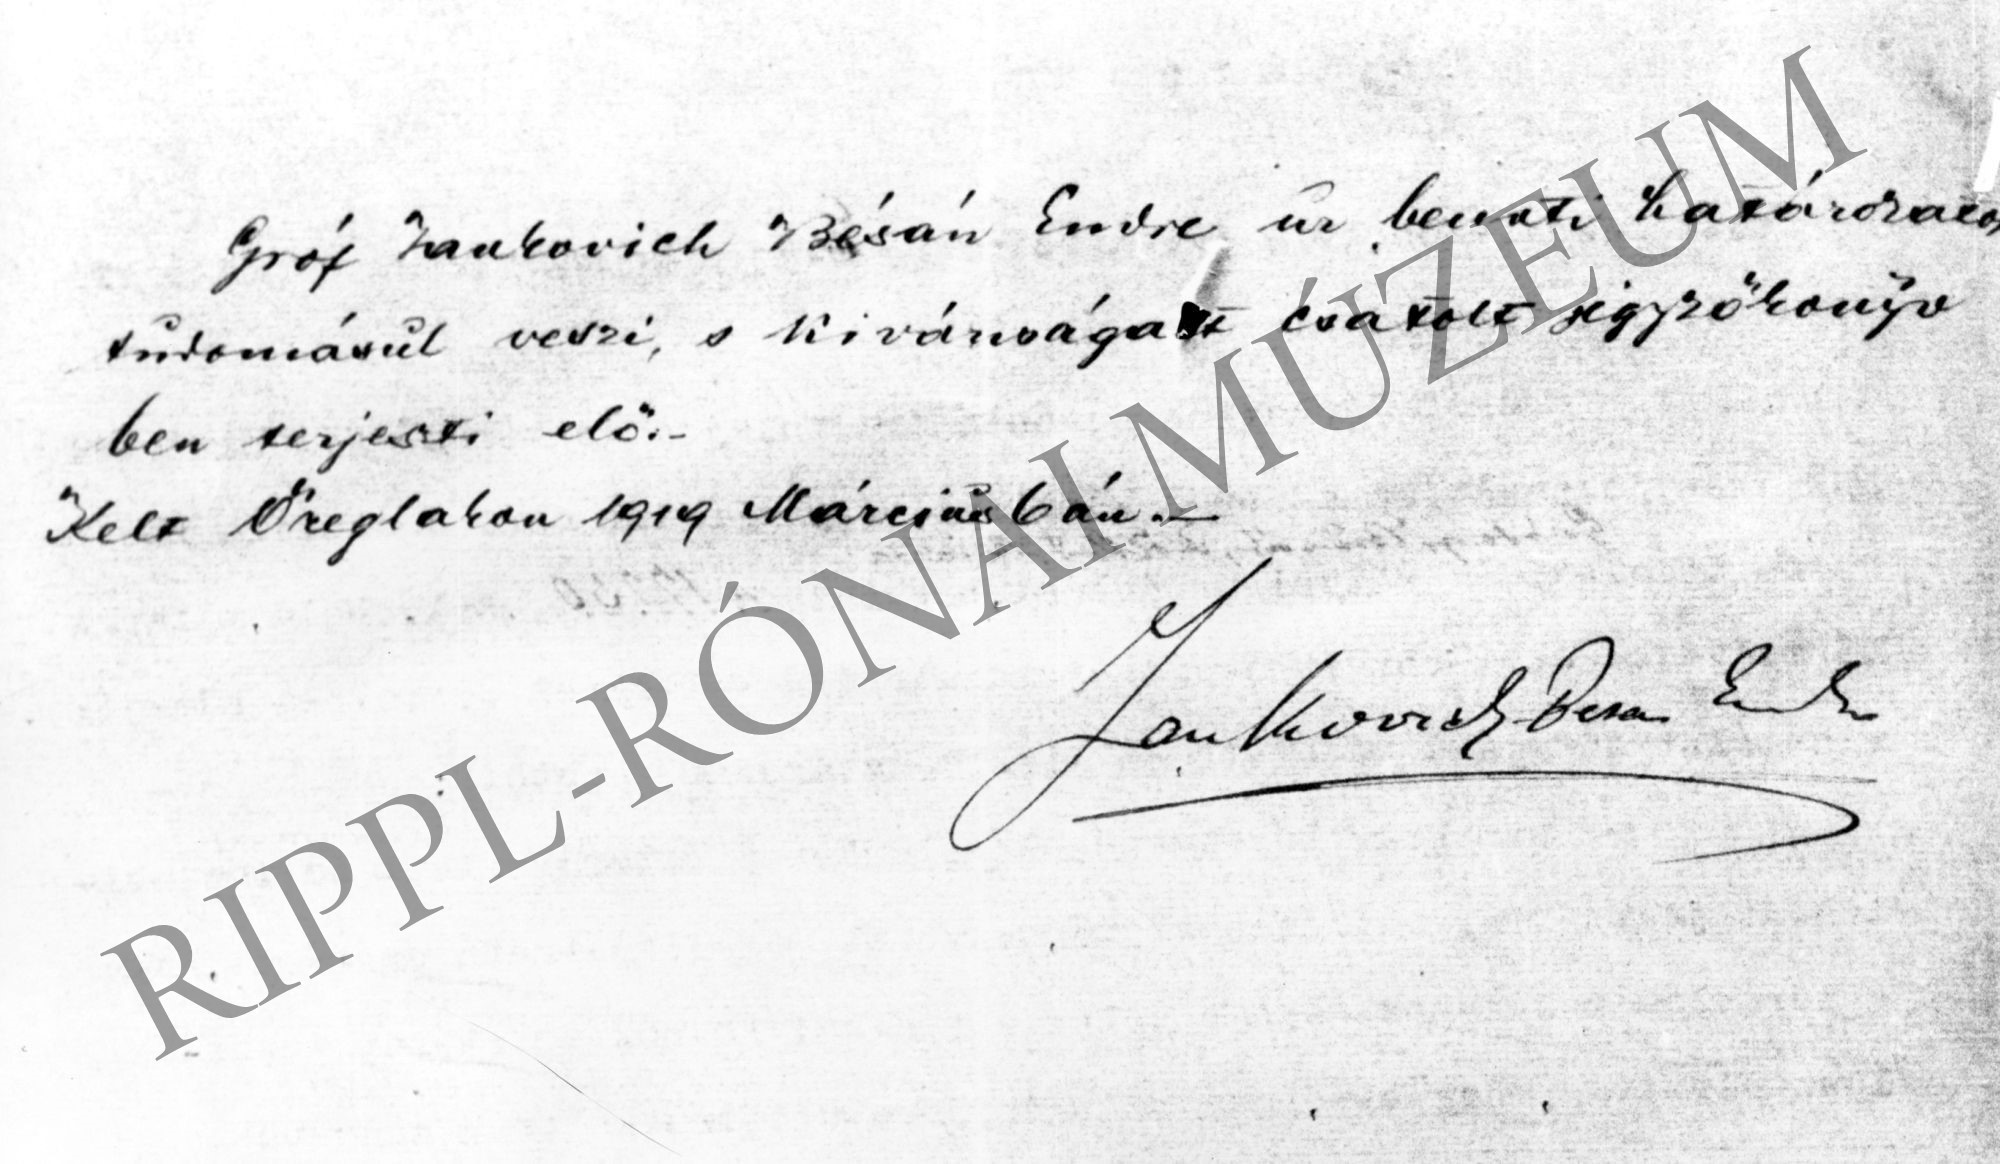 Gr. Jankovich Bésán Endre nyilatkozata határozat tudomásul vételéről Öreglak, 1919. március 6. (Rippl-Rónai Múzeum CC BY-NC-SA)